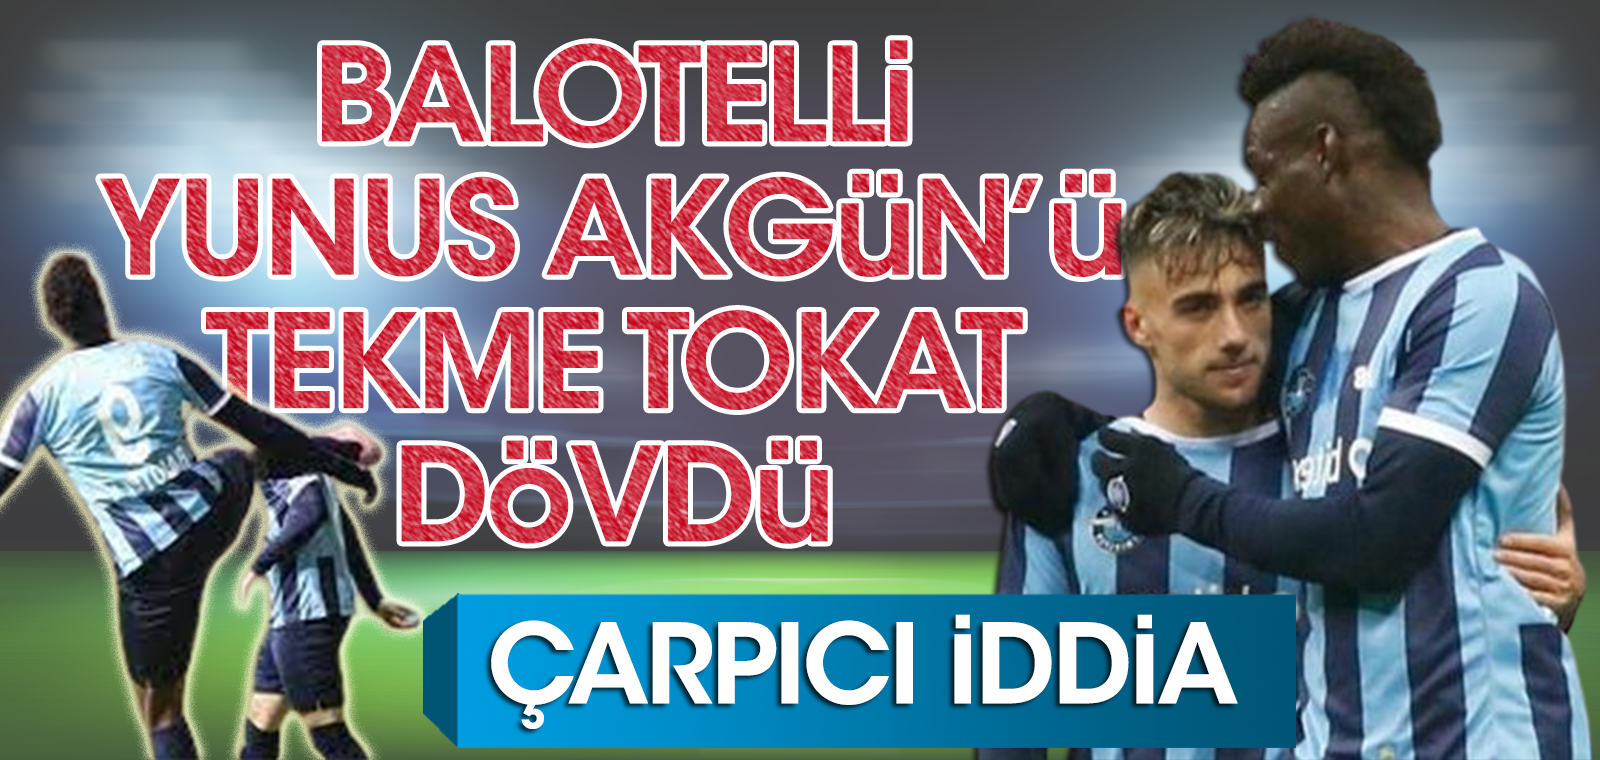 Flaş iddia: Balotelli, Yunus Akgün'ü tekme tokat dövdü! Açıklama geldi